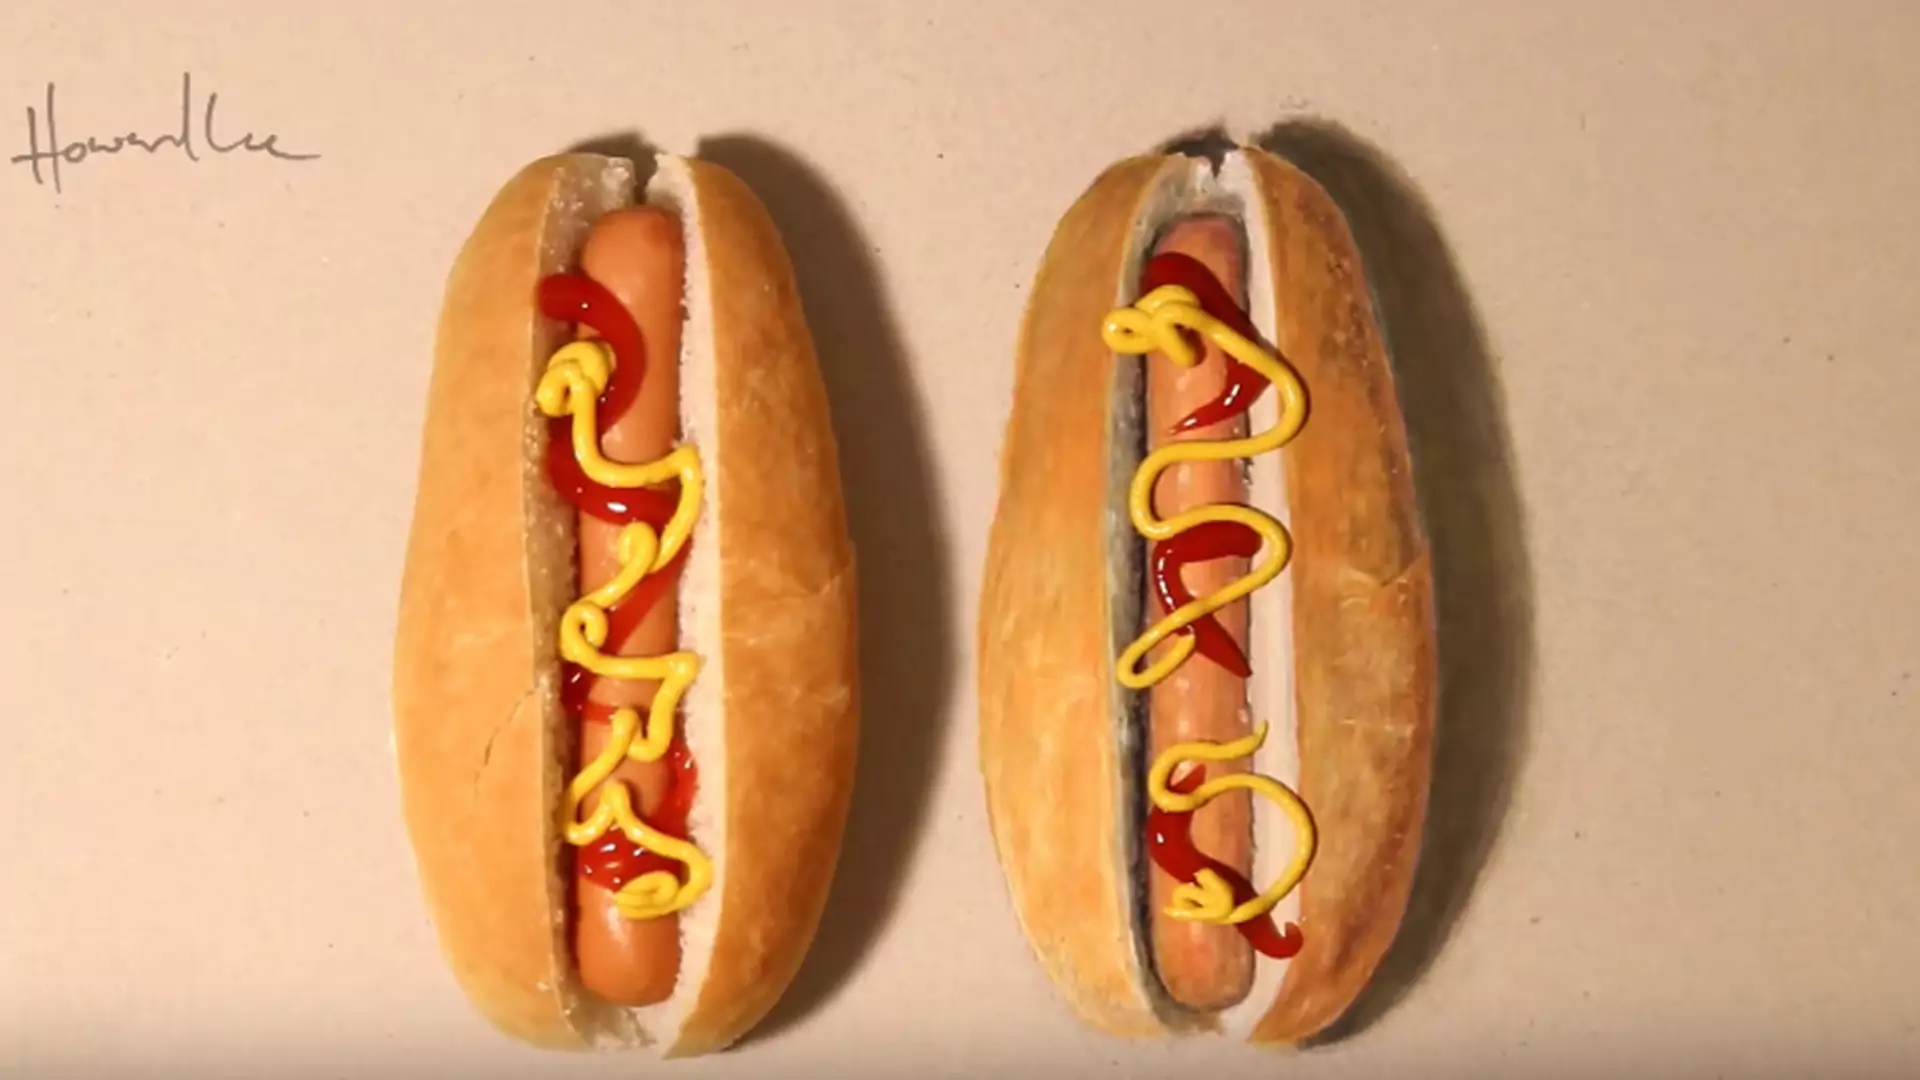 Tylko jeden z tych hot-dogów jest prawdziwy. Który z nich wyląduje w twoim brzuchu?